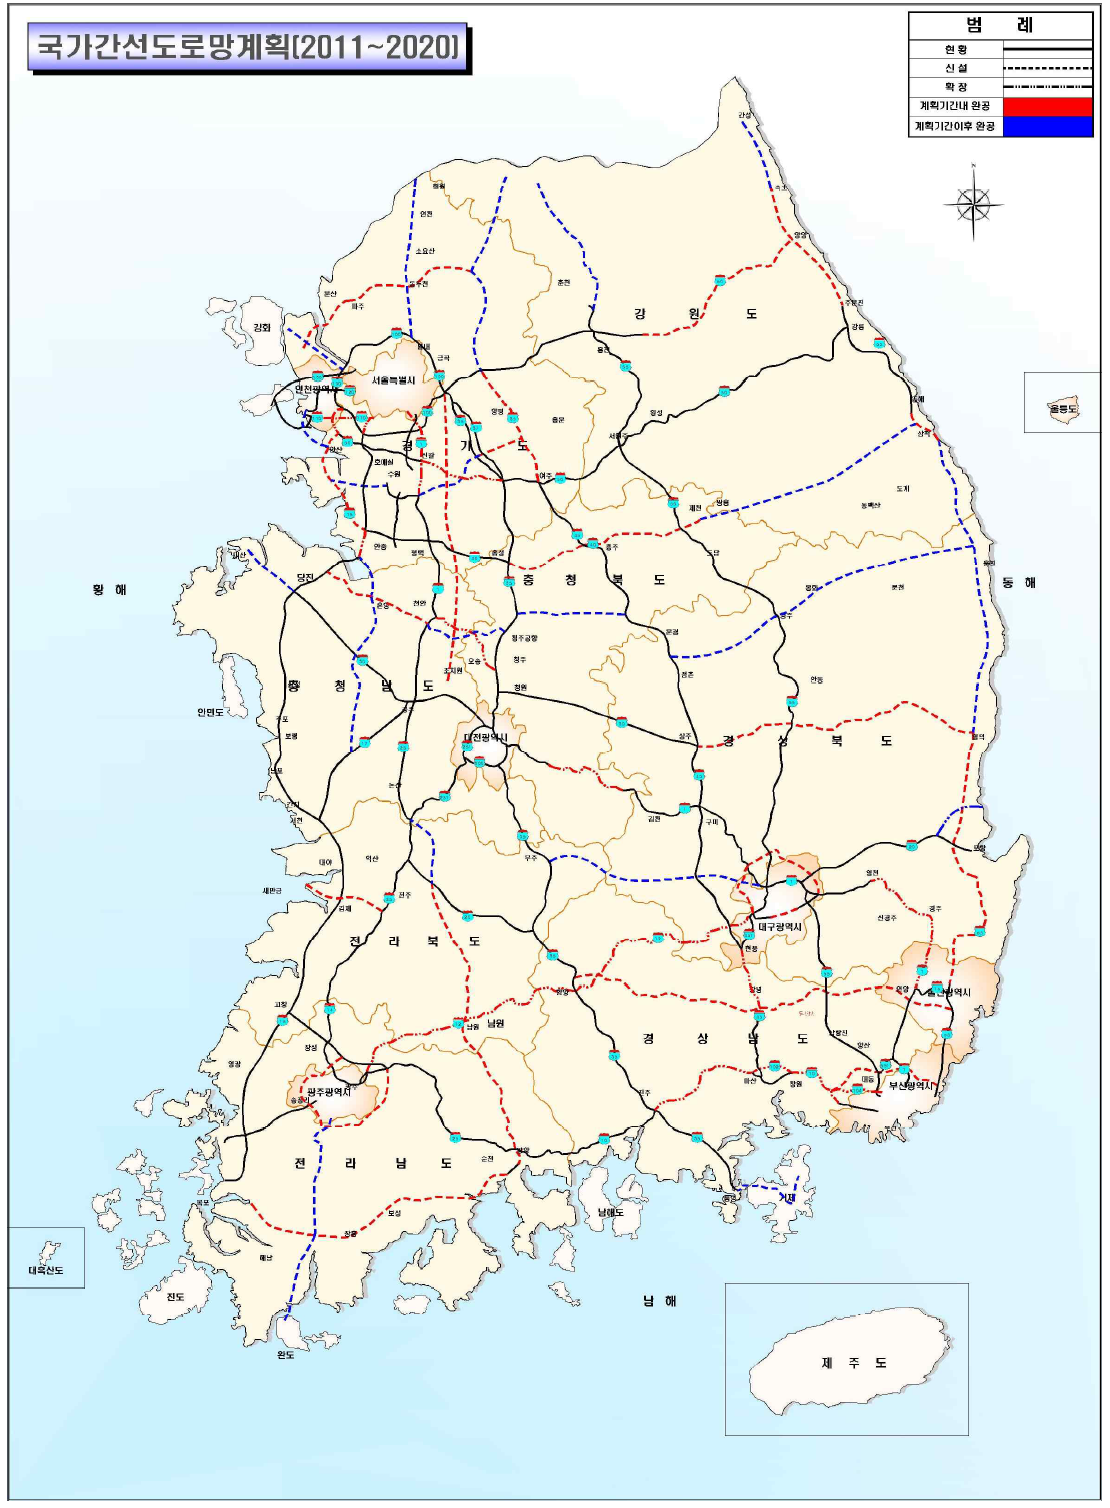 국가간선도로망계획